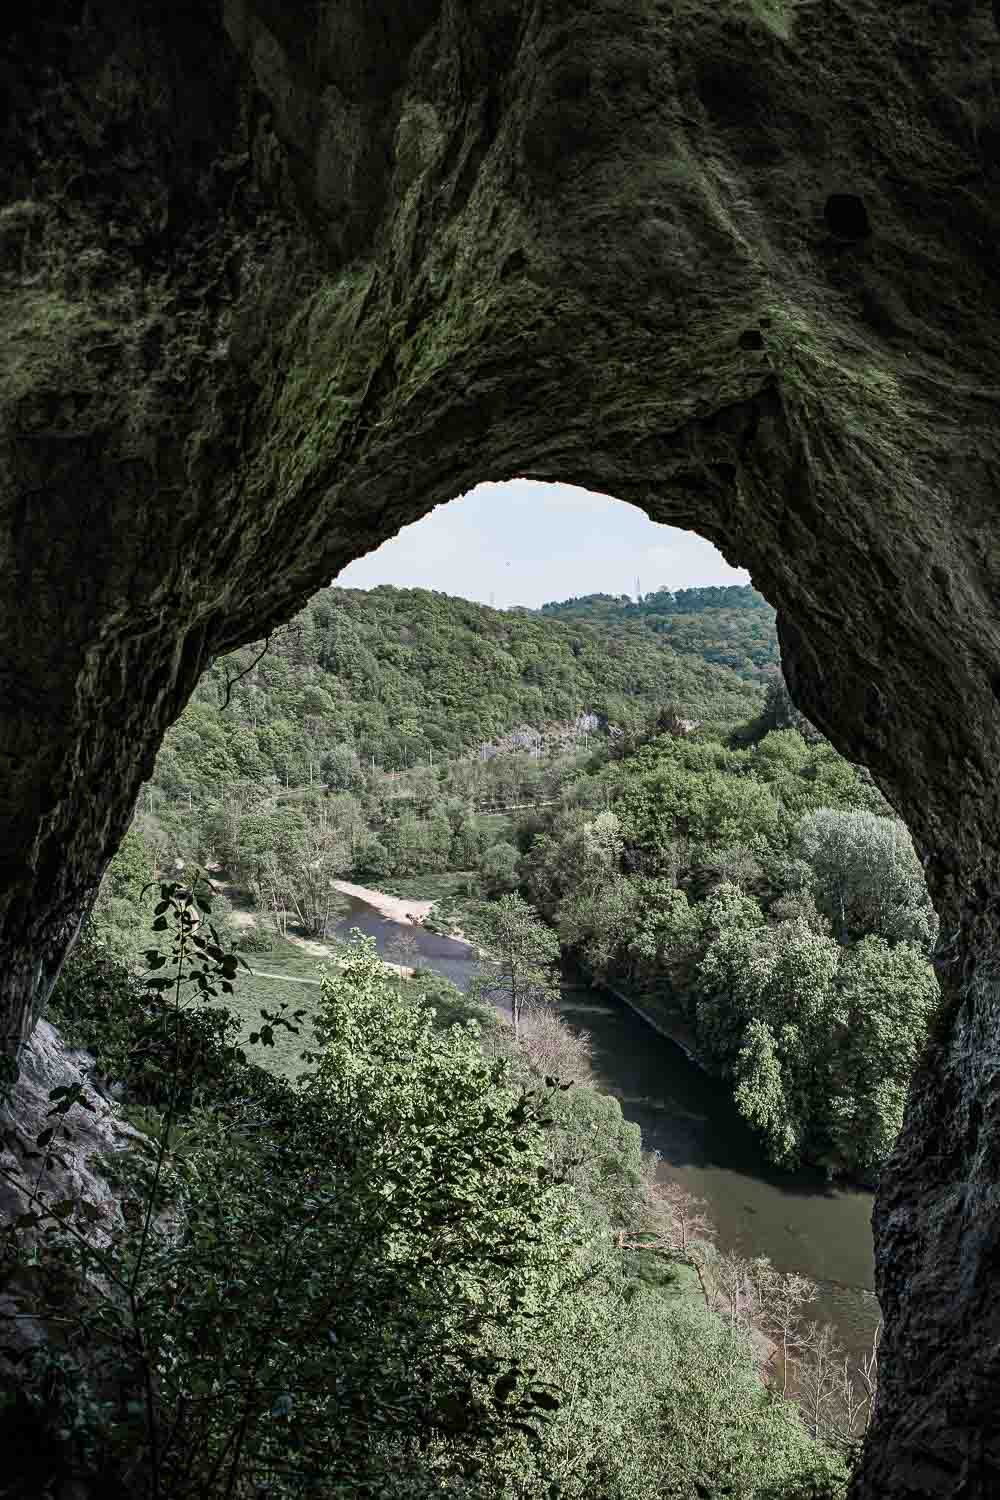  Le parc de Furfooz à Namur près de Dinant qui recèle un patrimoine archéologique, naturel et géologique.  